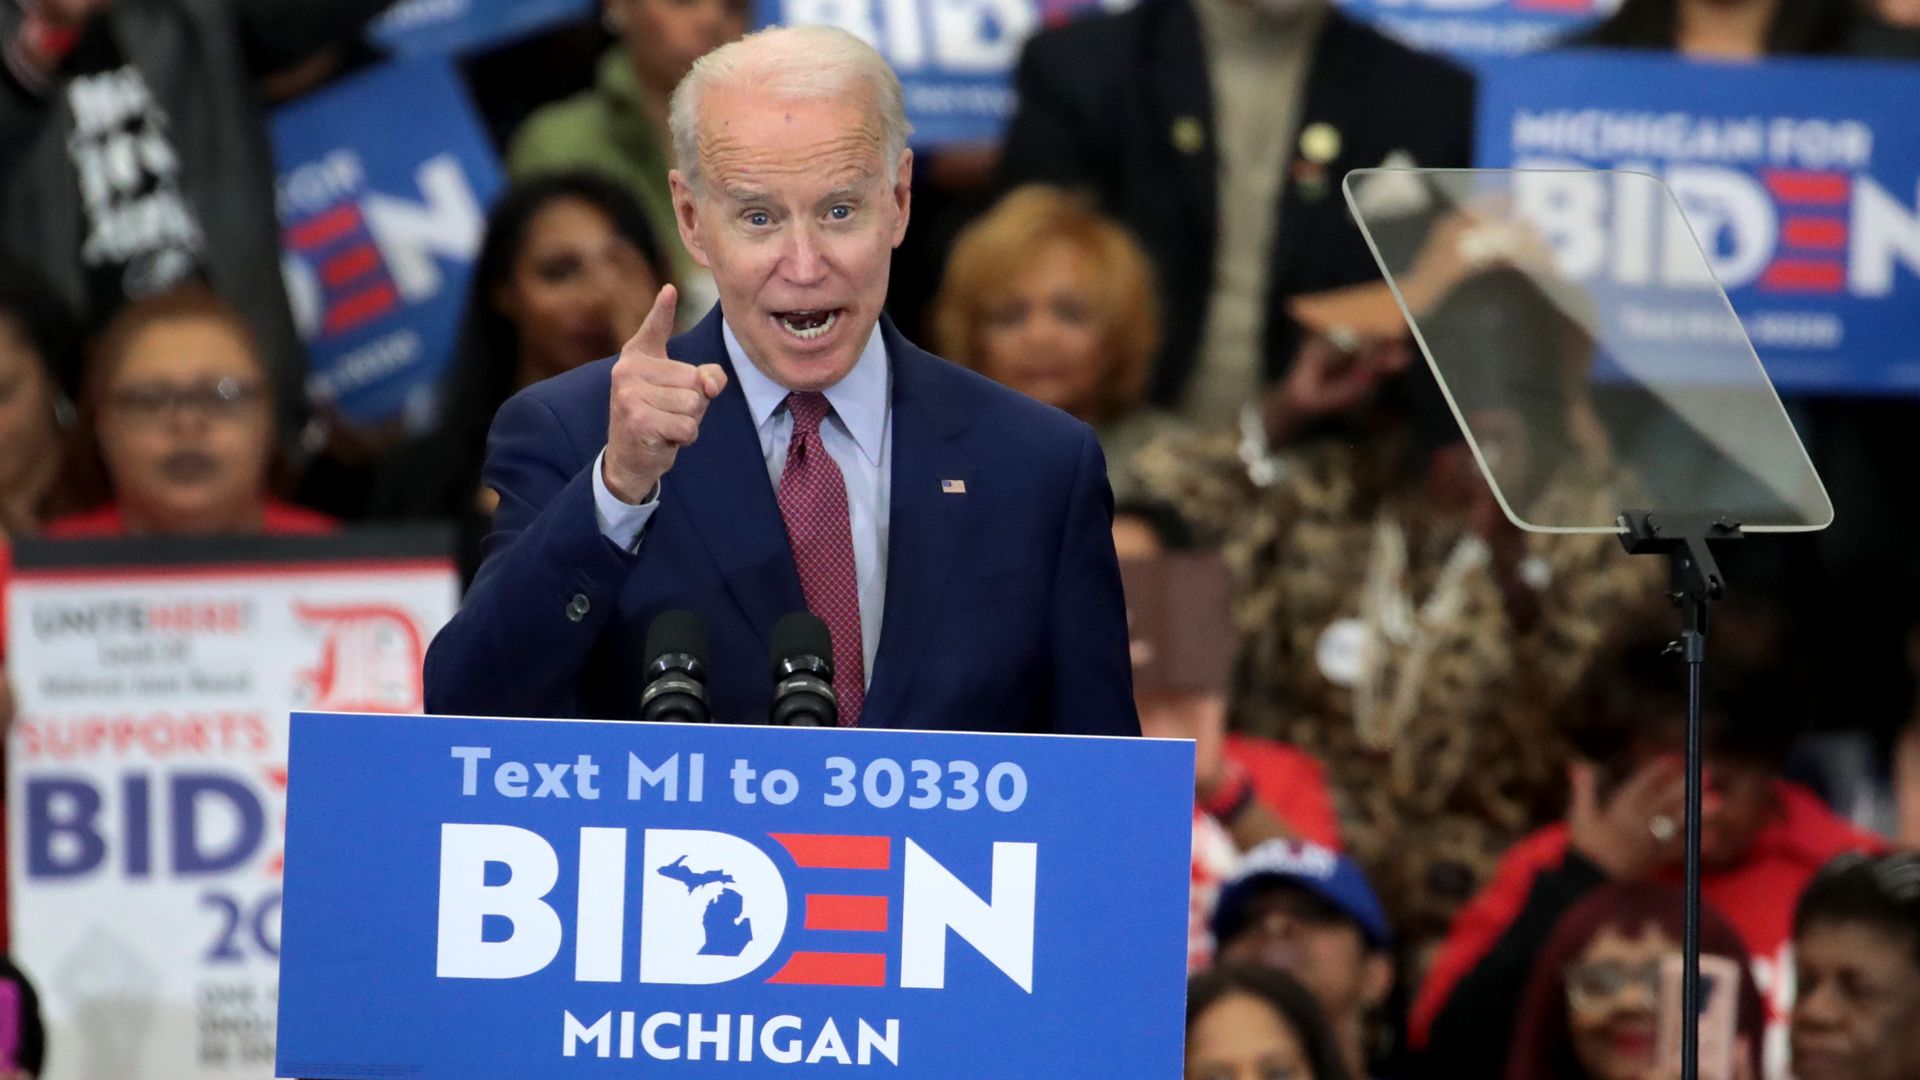 Joe Biden shouts at a Detroit rally